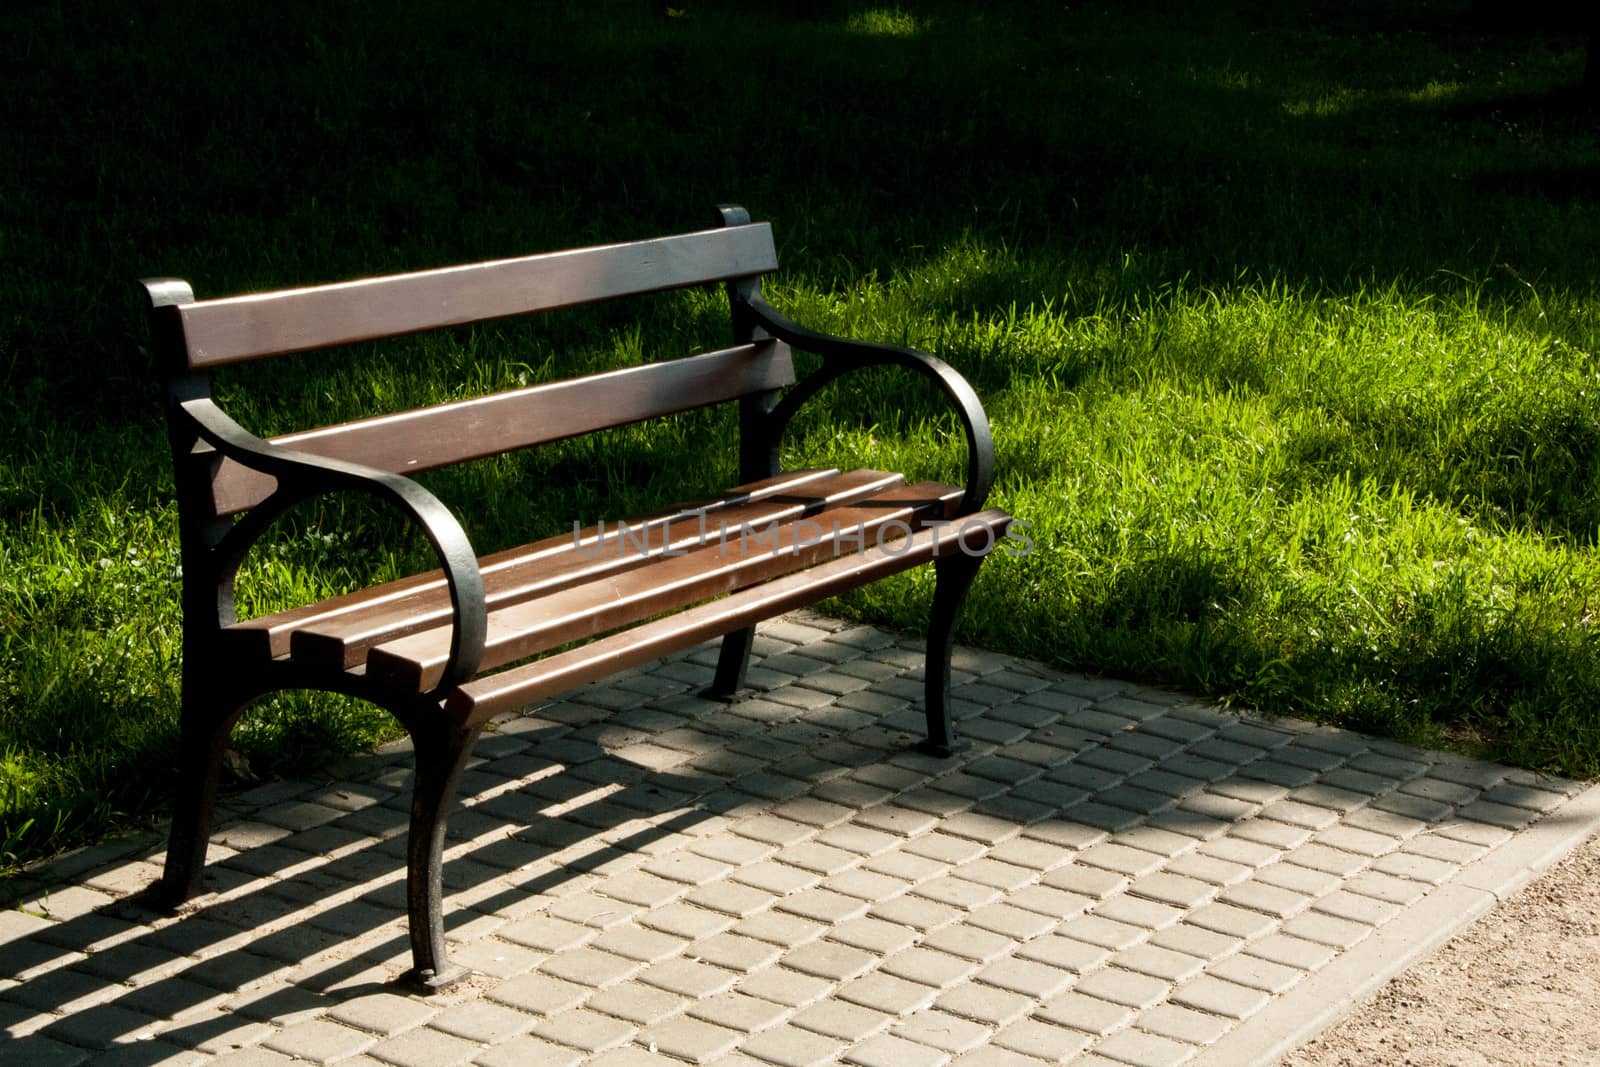 Stylish bench in summer park by alexx60